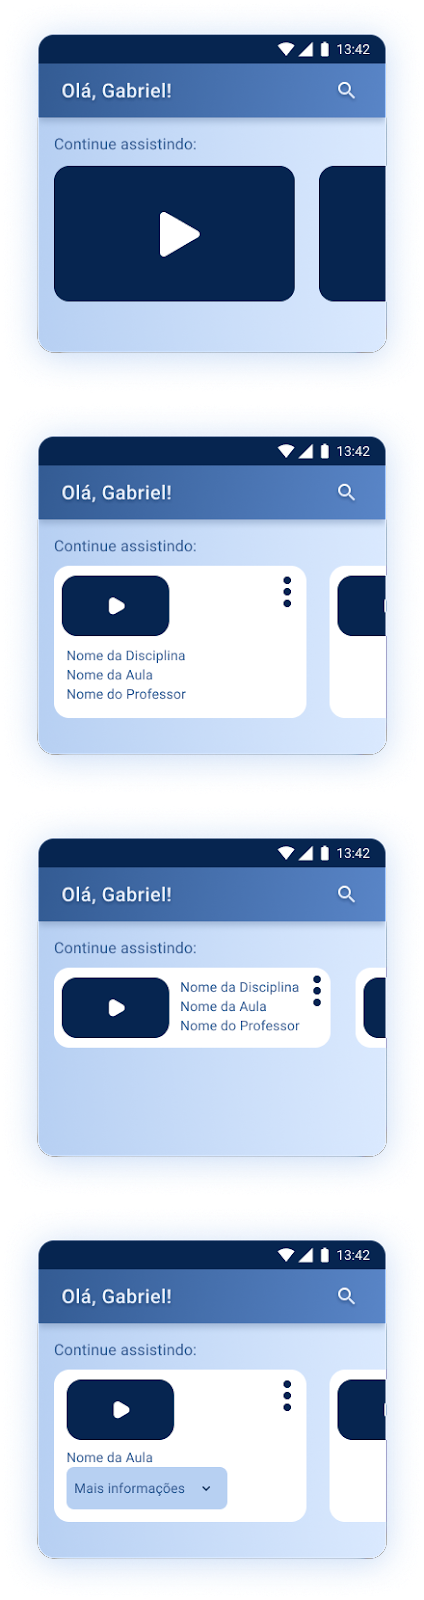 Captura de tela da página inicial do aplicativo de educação dividida em 4 versões, onde a funcionalidade de “Continuar assistindo” é elaborada de diferentes maneiras.